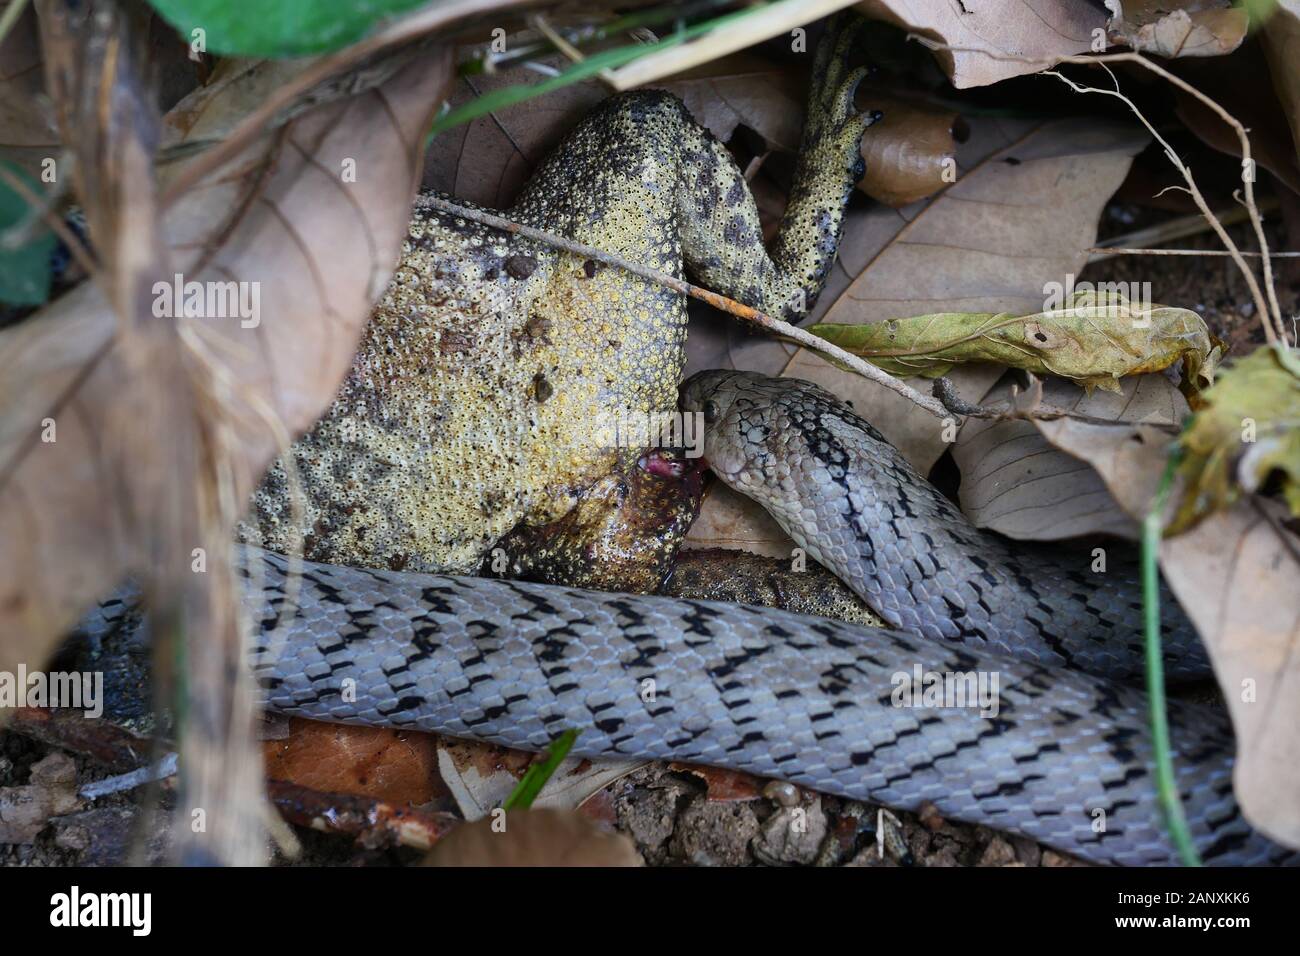 Le serpent kukri ( Oligodon fasciolatus ) mordre et manger dans la forêt, à Crapaud grenouille chasse Reptiles reptiles venimeux, se cachant sous brown feuille sèche Banque D'Images